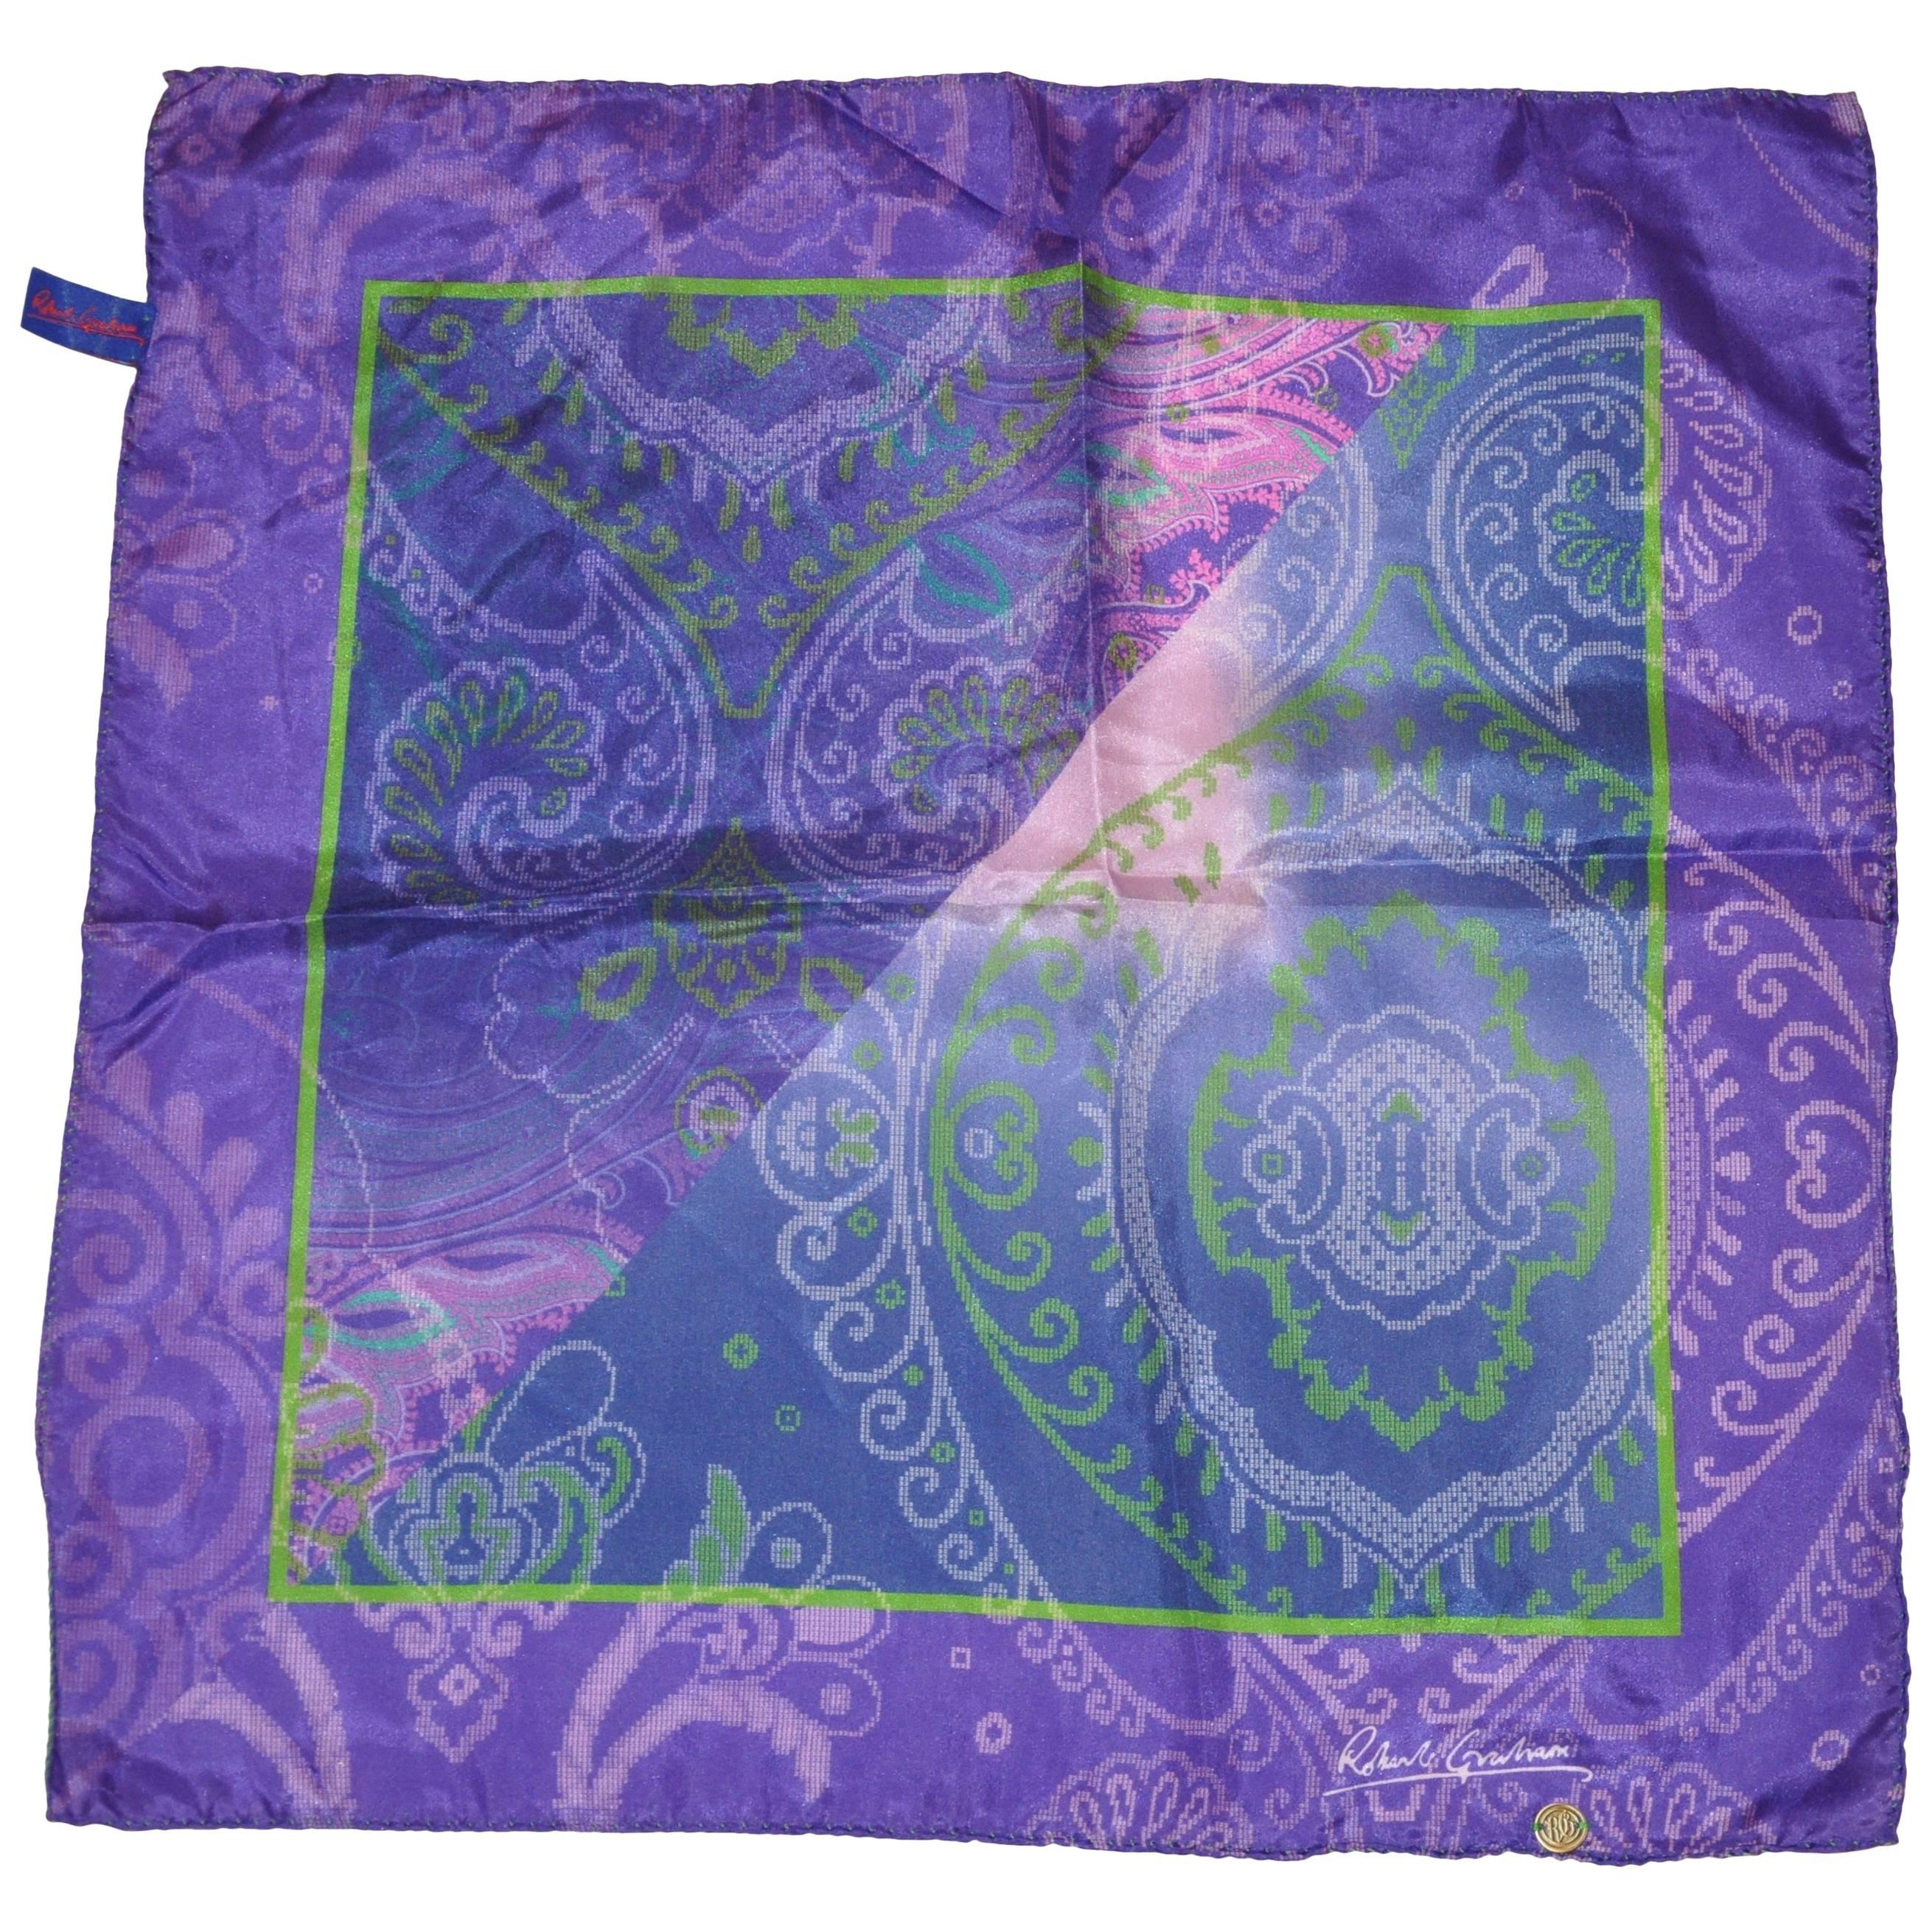 Seidenhandtaschentuch in Violett und Lavendel von Robert Graham